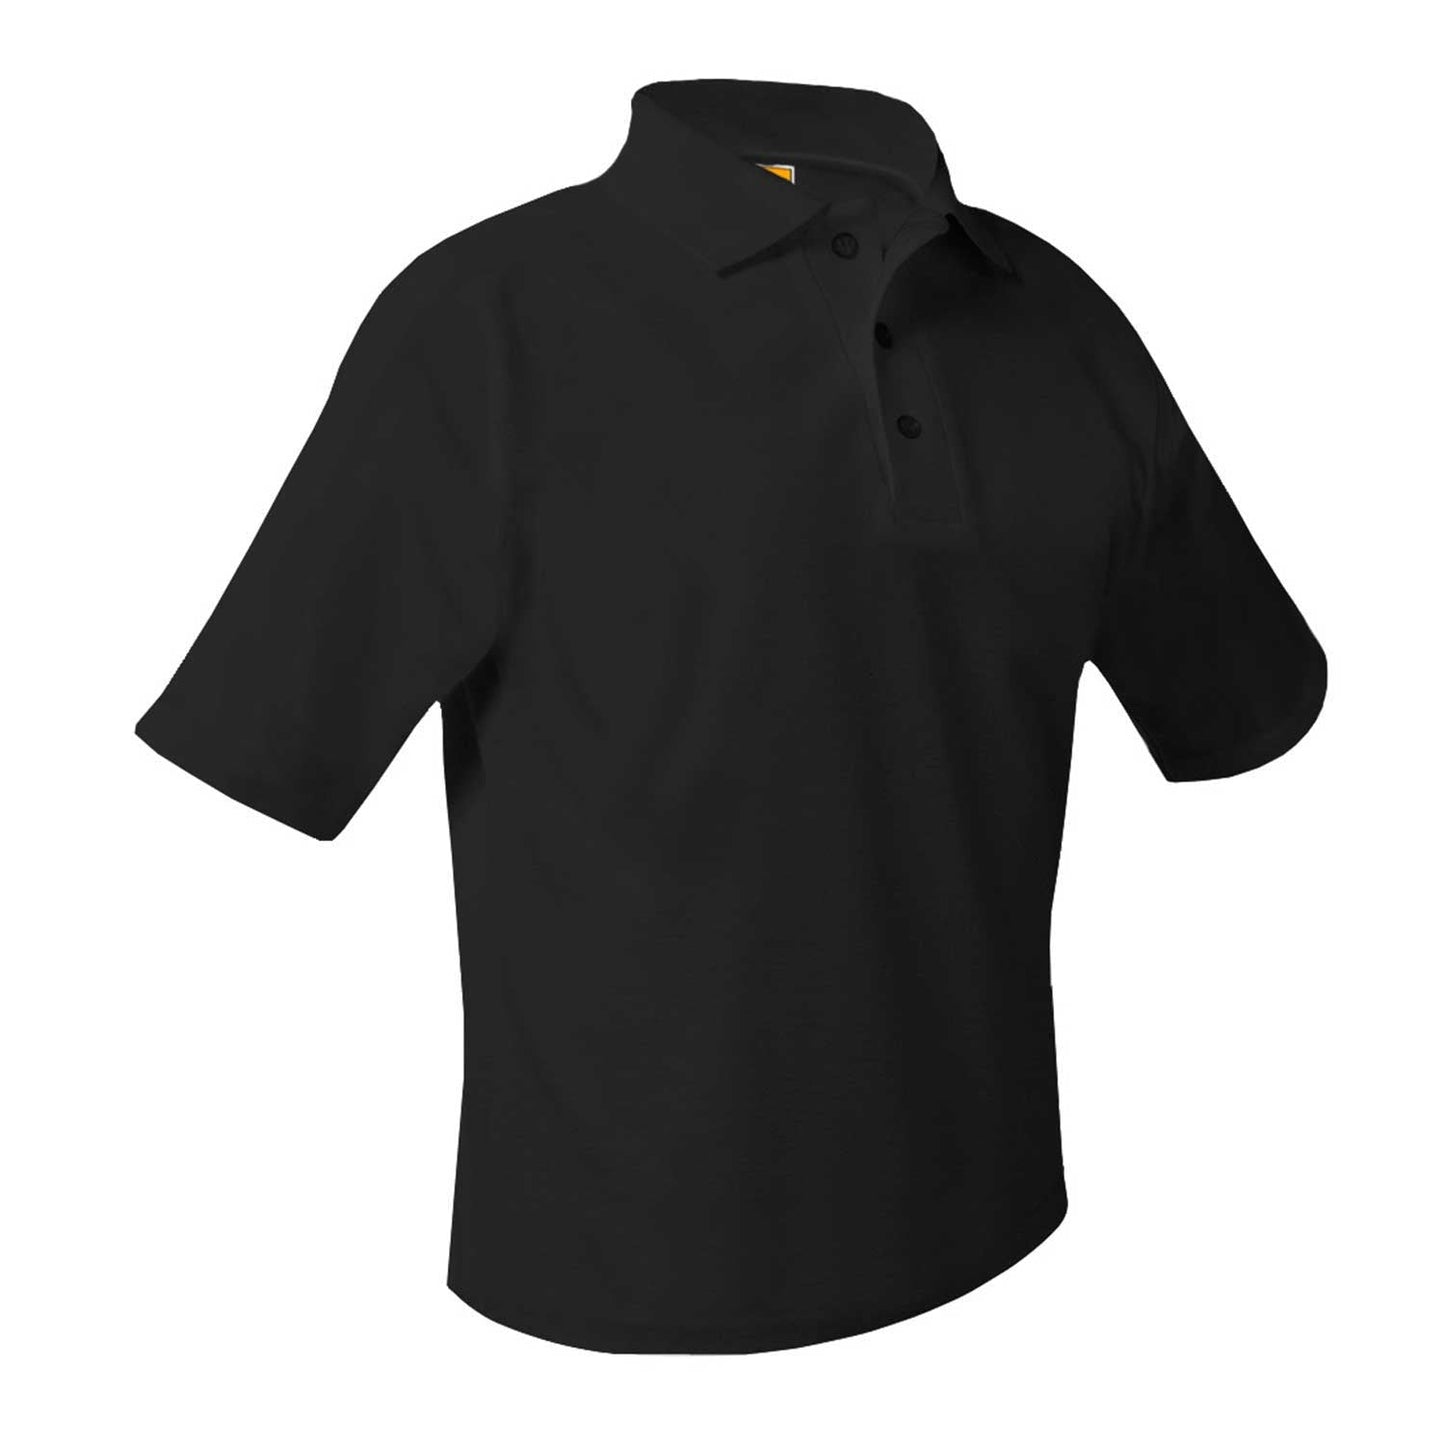 Men's/Unisex Pique Polo Shirt, Short Sleeves, Hemmed - 1227